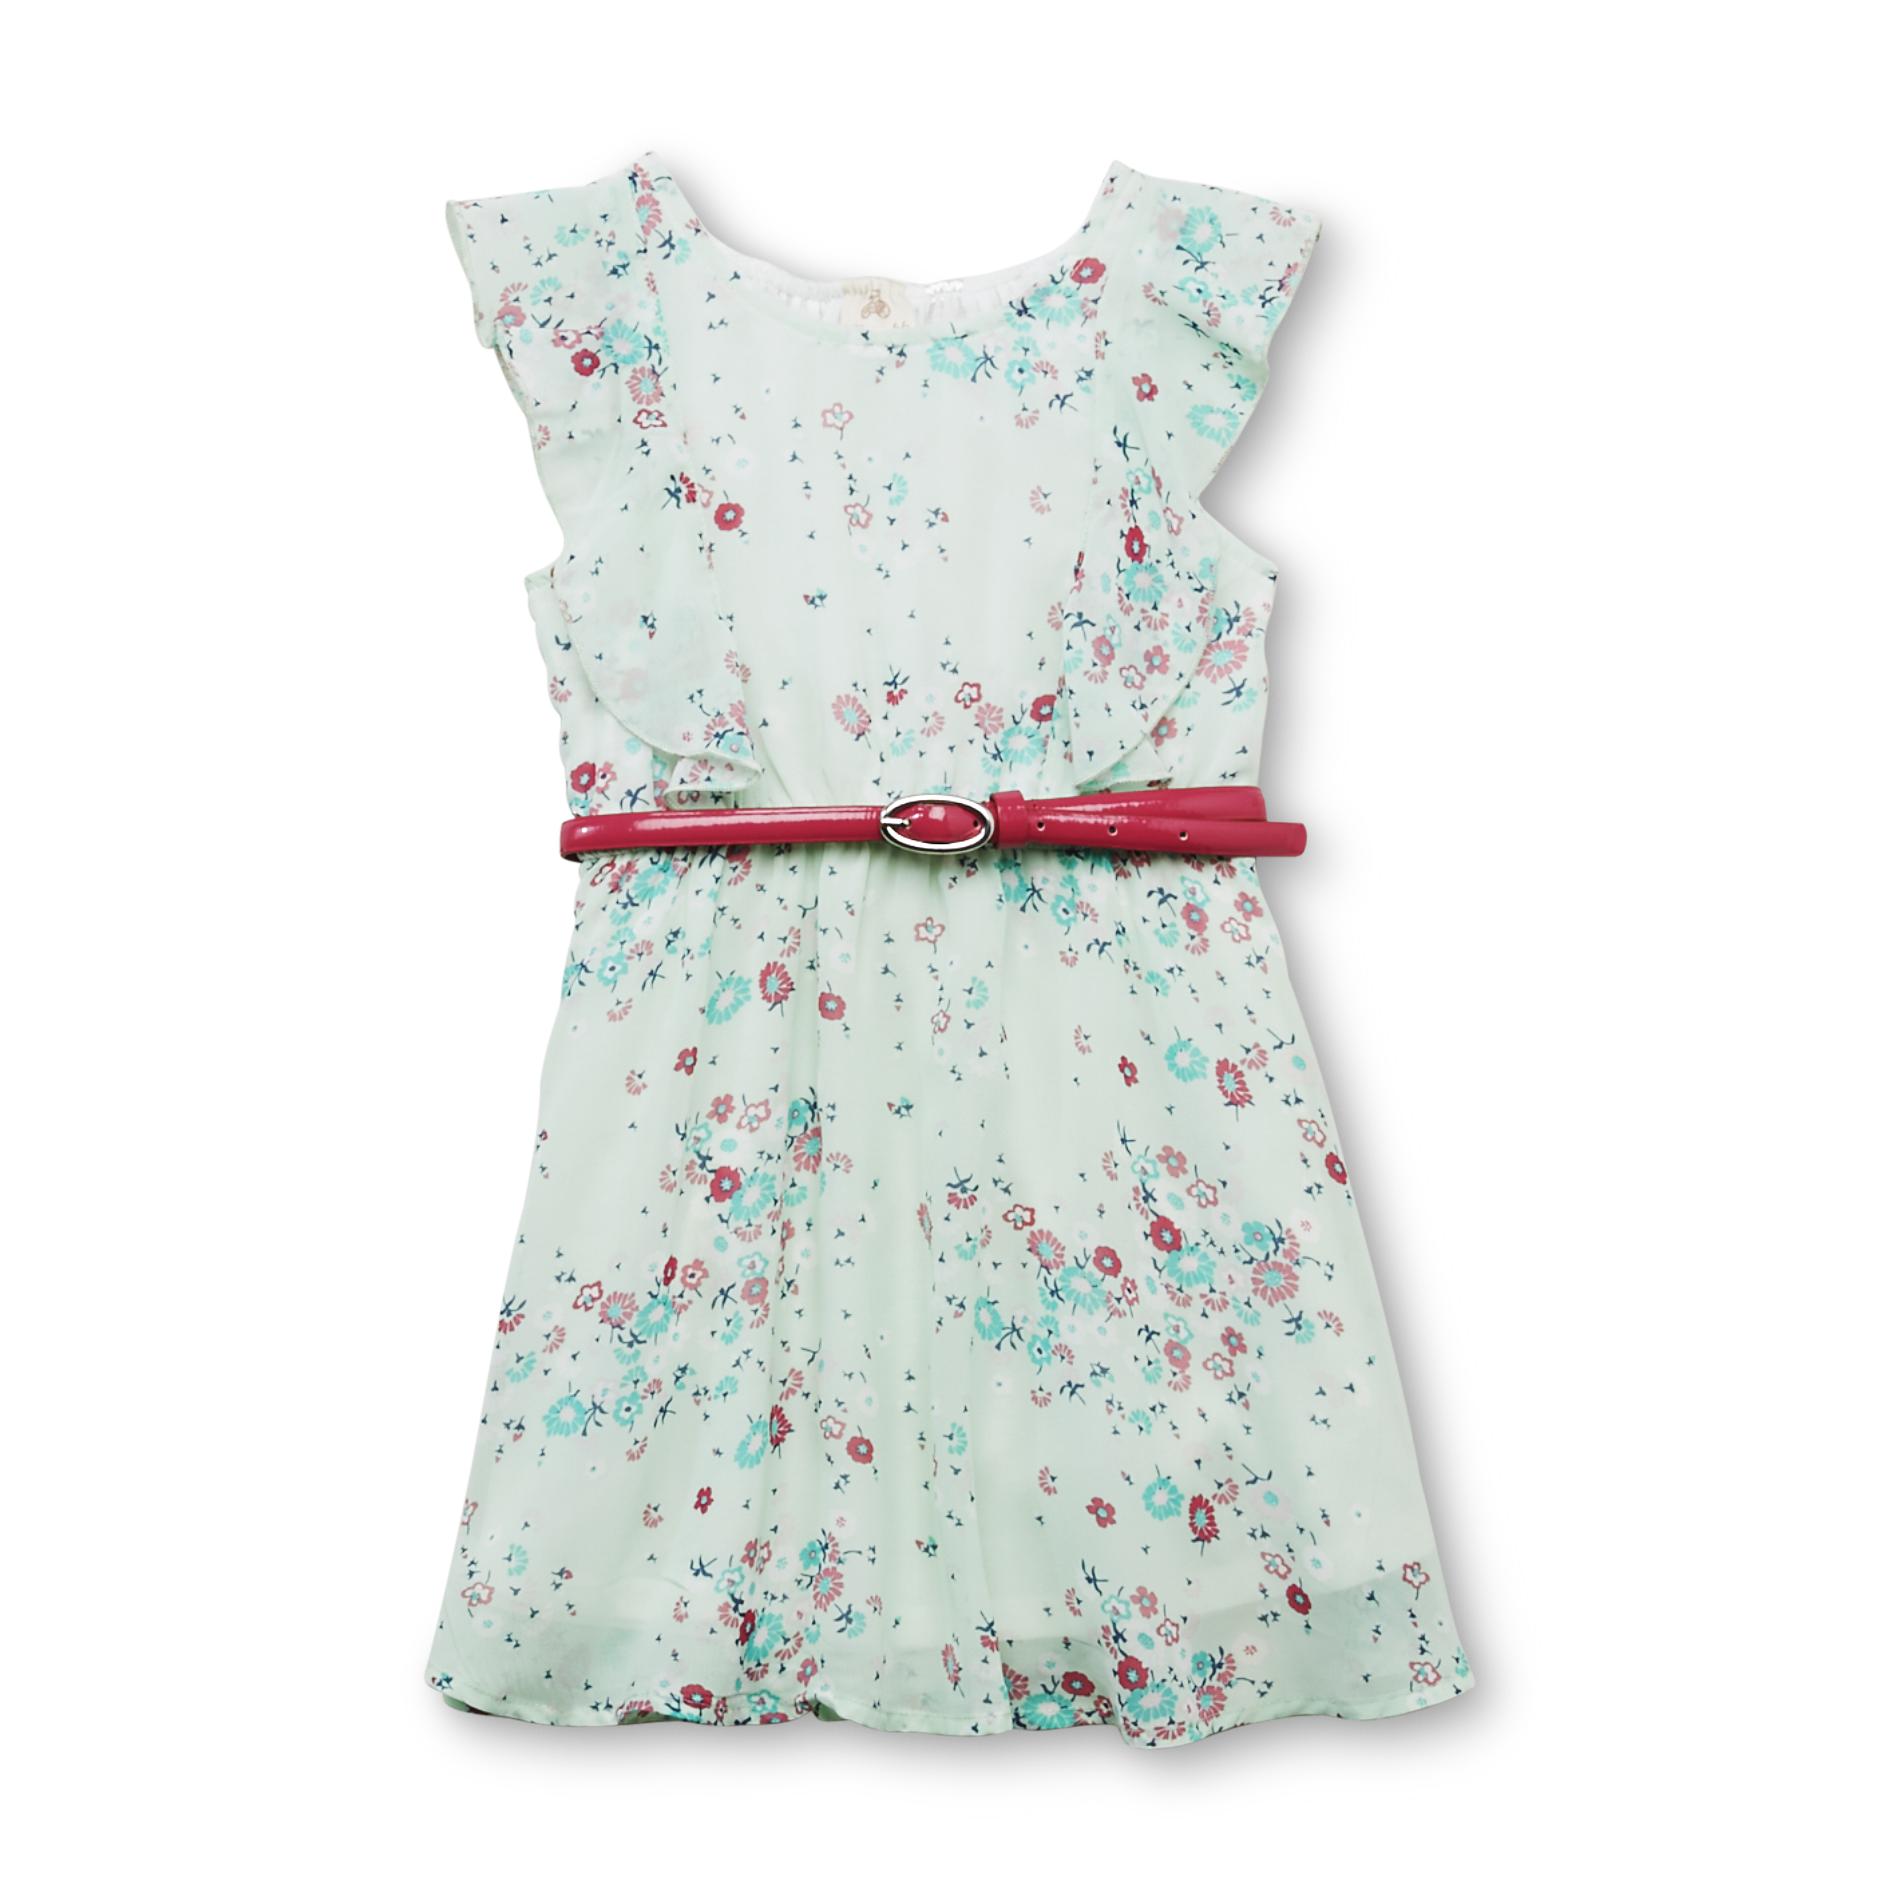 Route 66 Toddler Girl's Sleeveless Dress & Belt - Floral Print